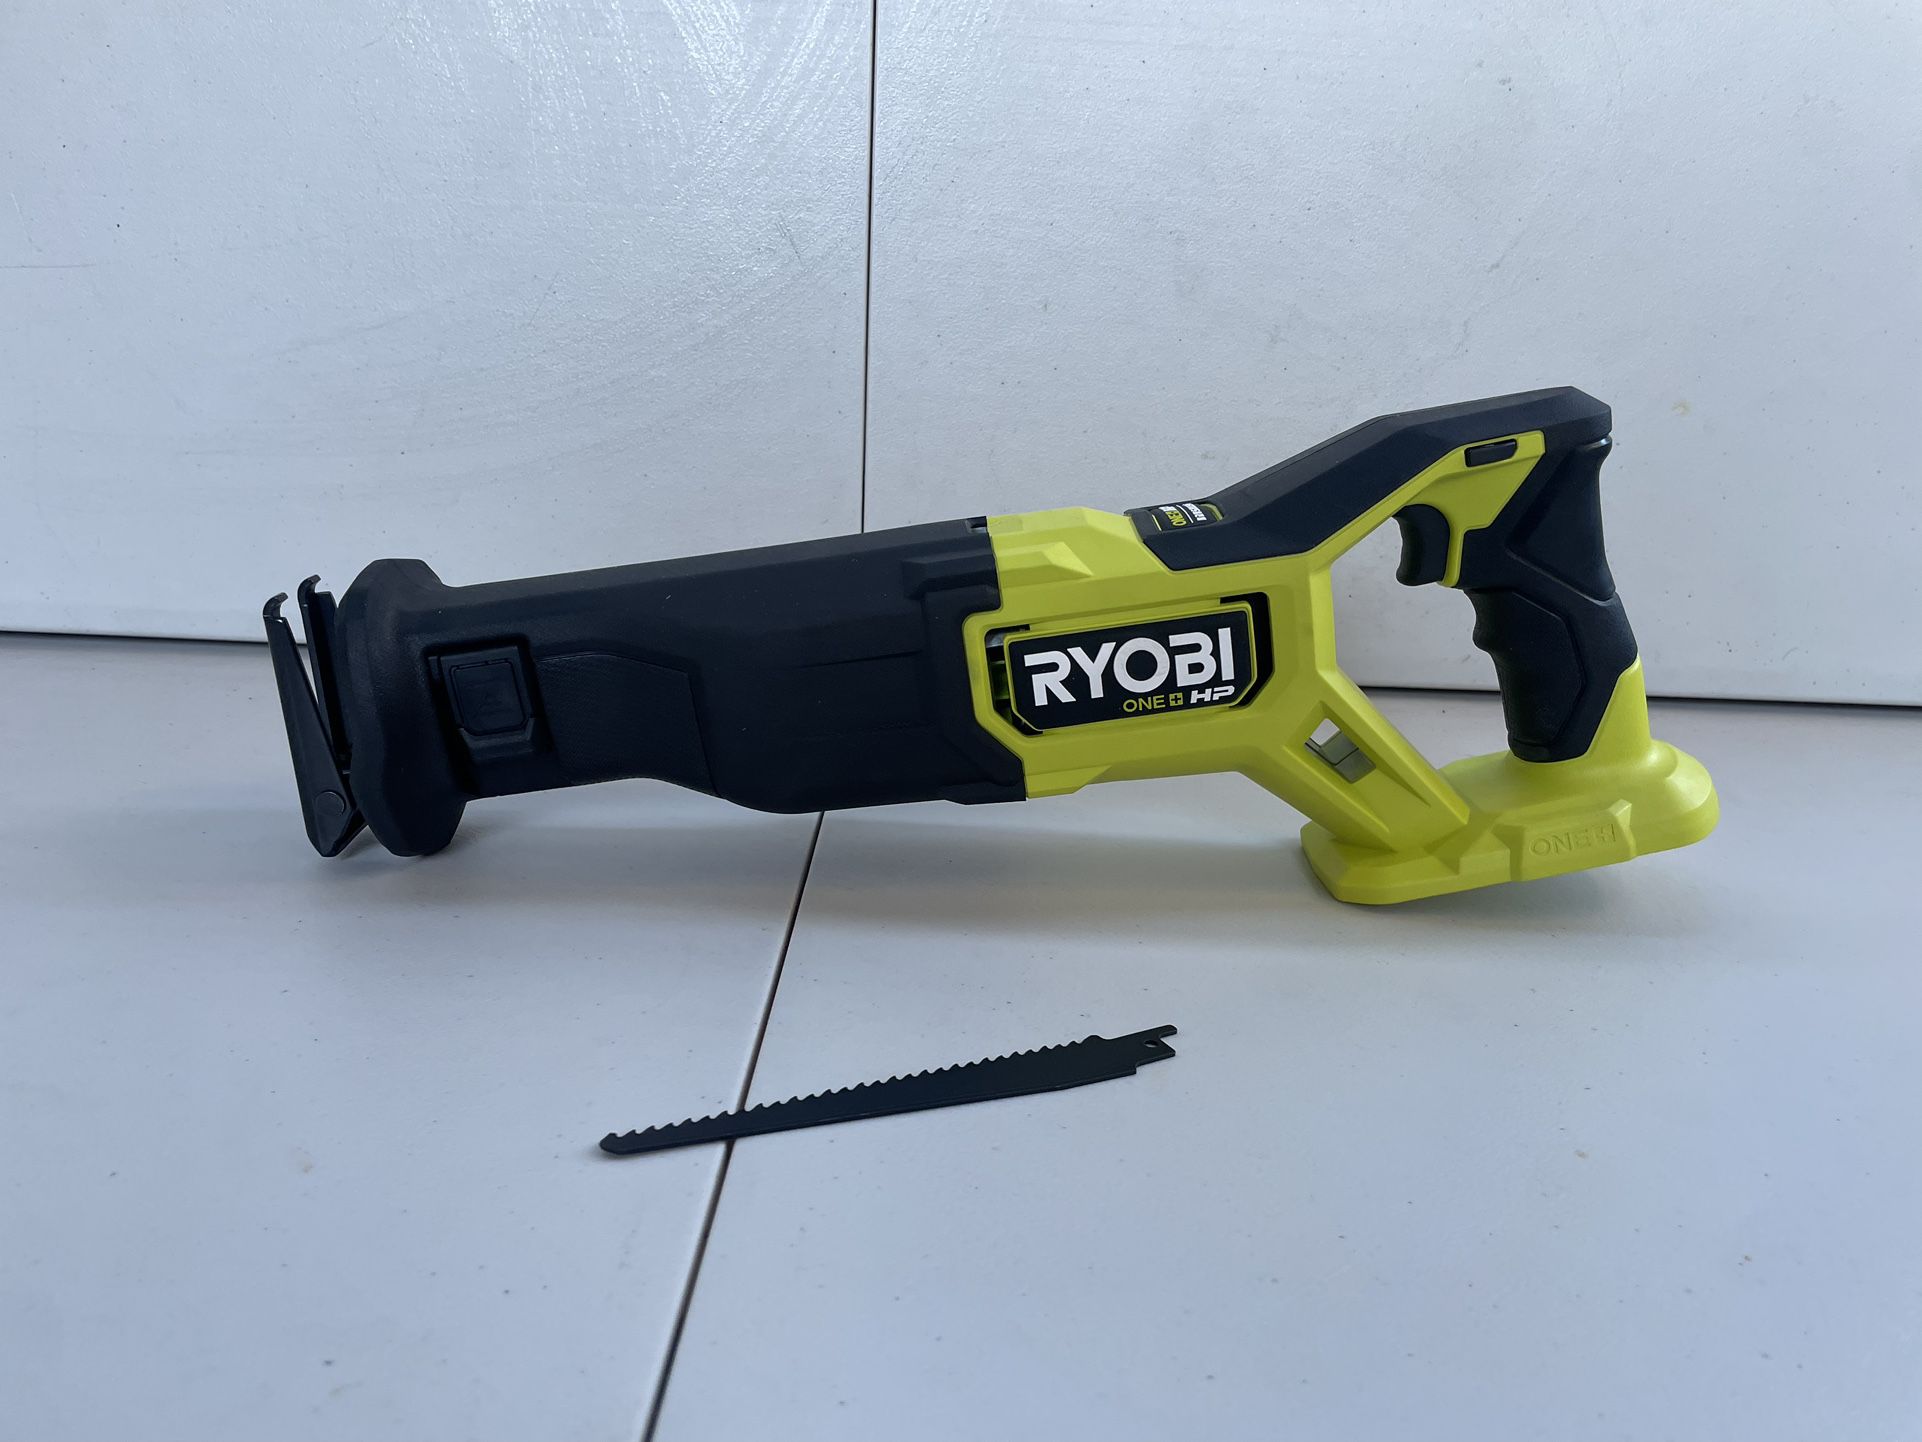 RYOBI 18v Brushless Reciprocating Saw (Tool Only) Model PBLRSO1